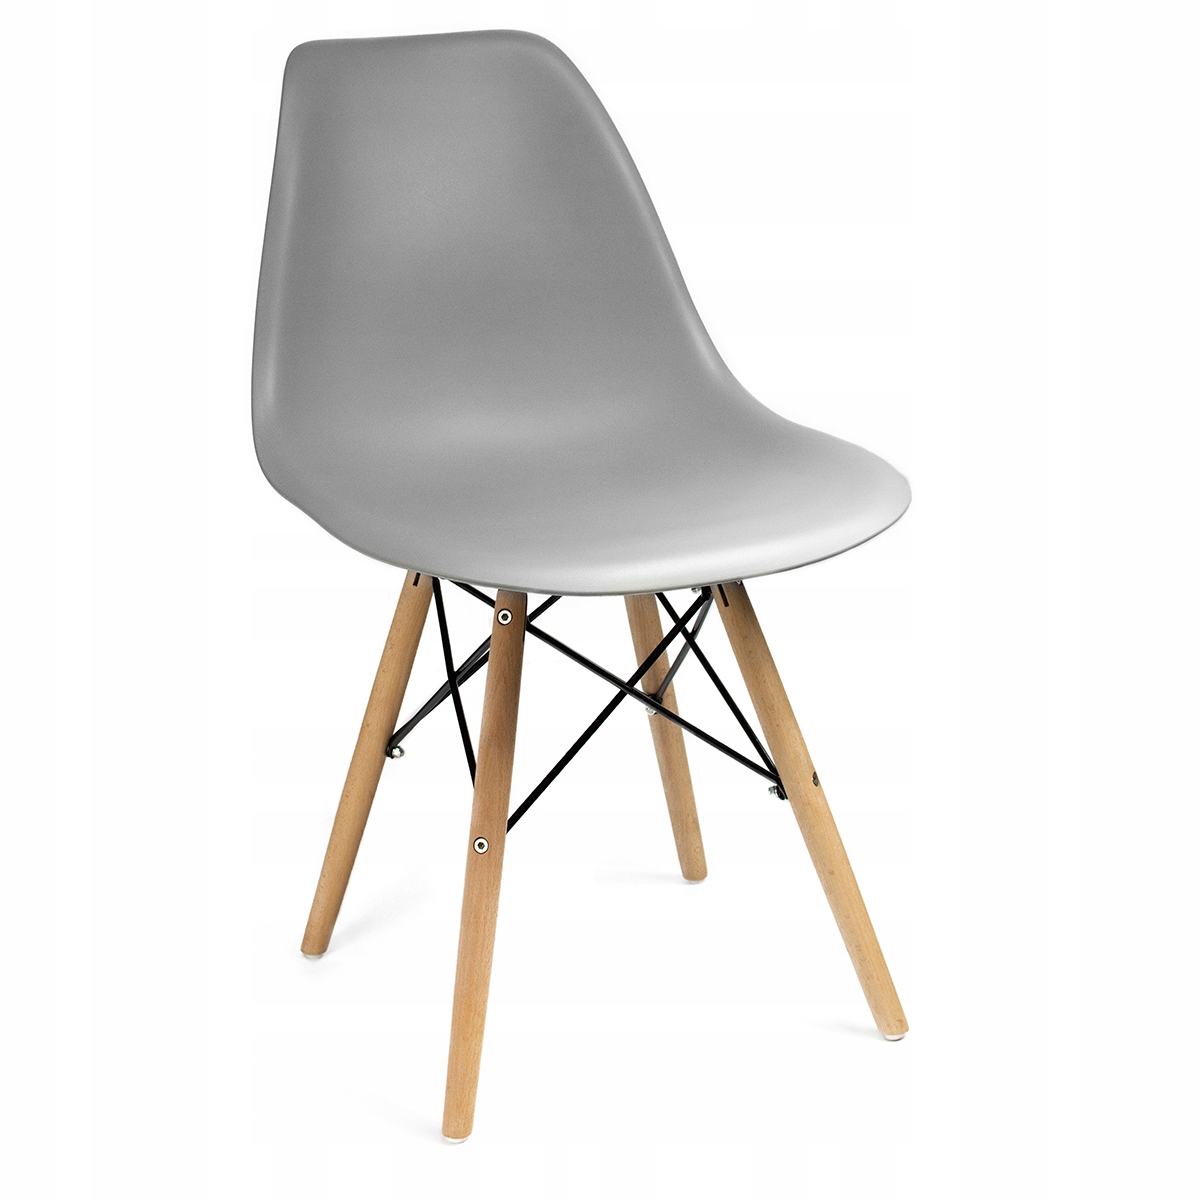 Stalas + 6 skandinaviškos kėdės, modernus komplektas.Stalo korpuso spalva šviesaus buko spalvos